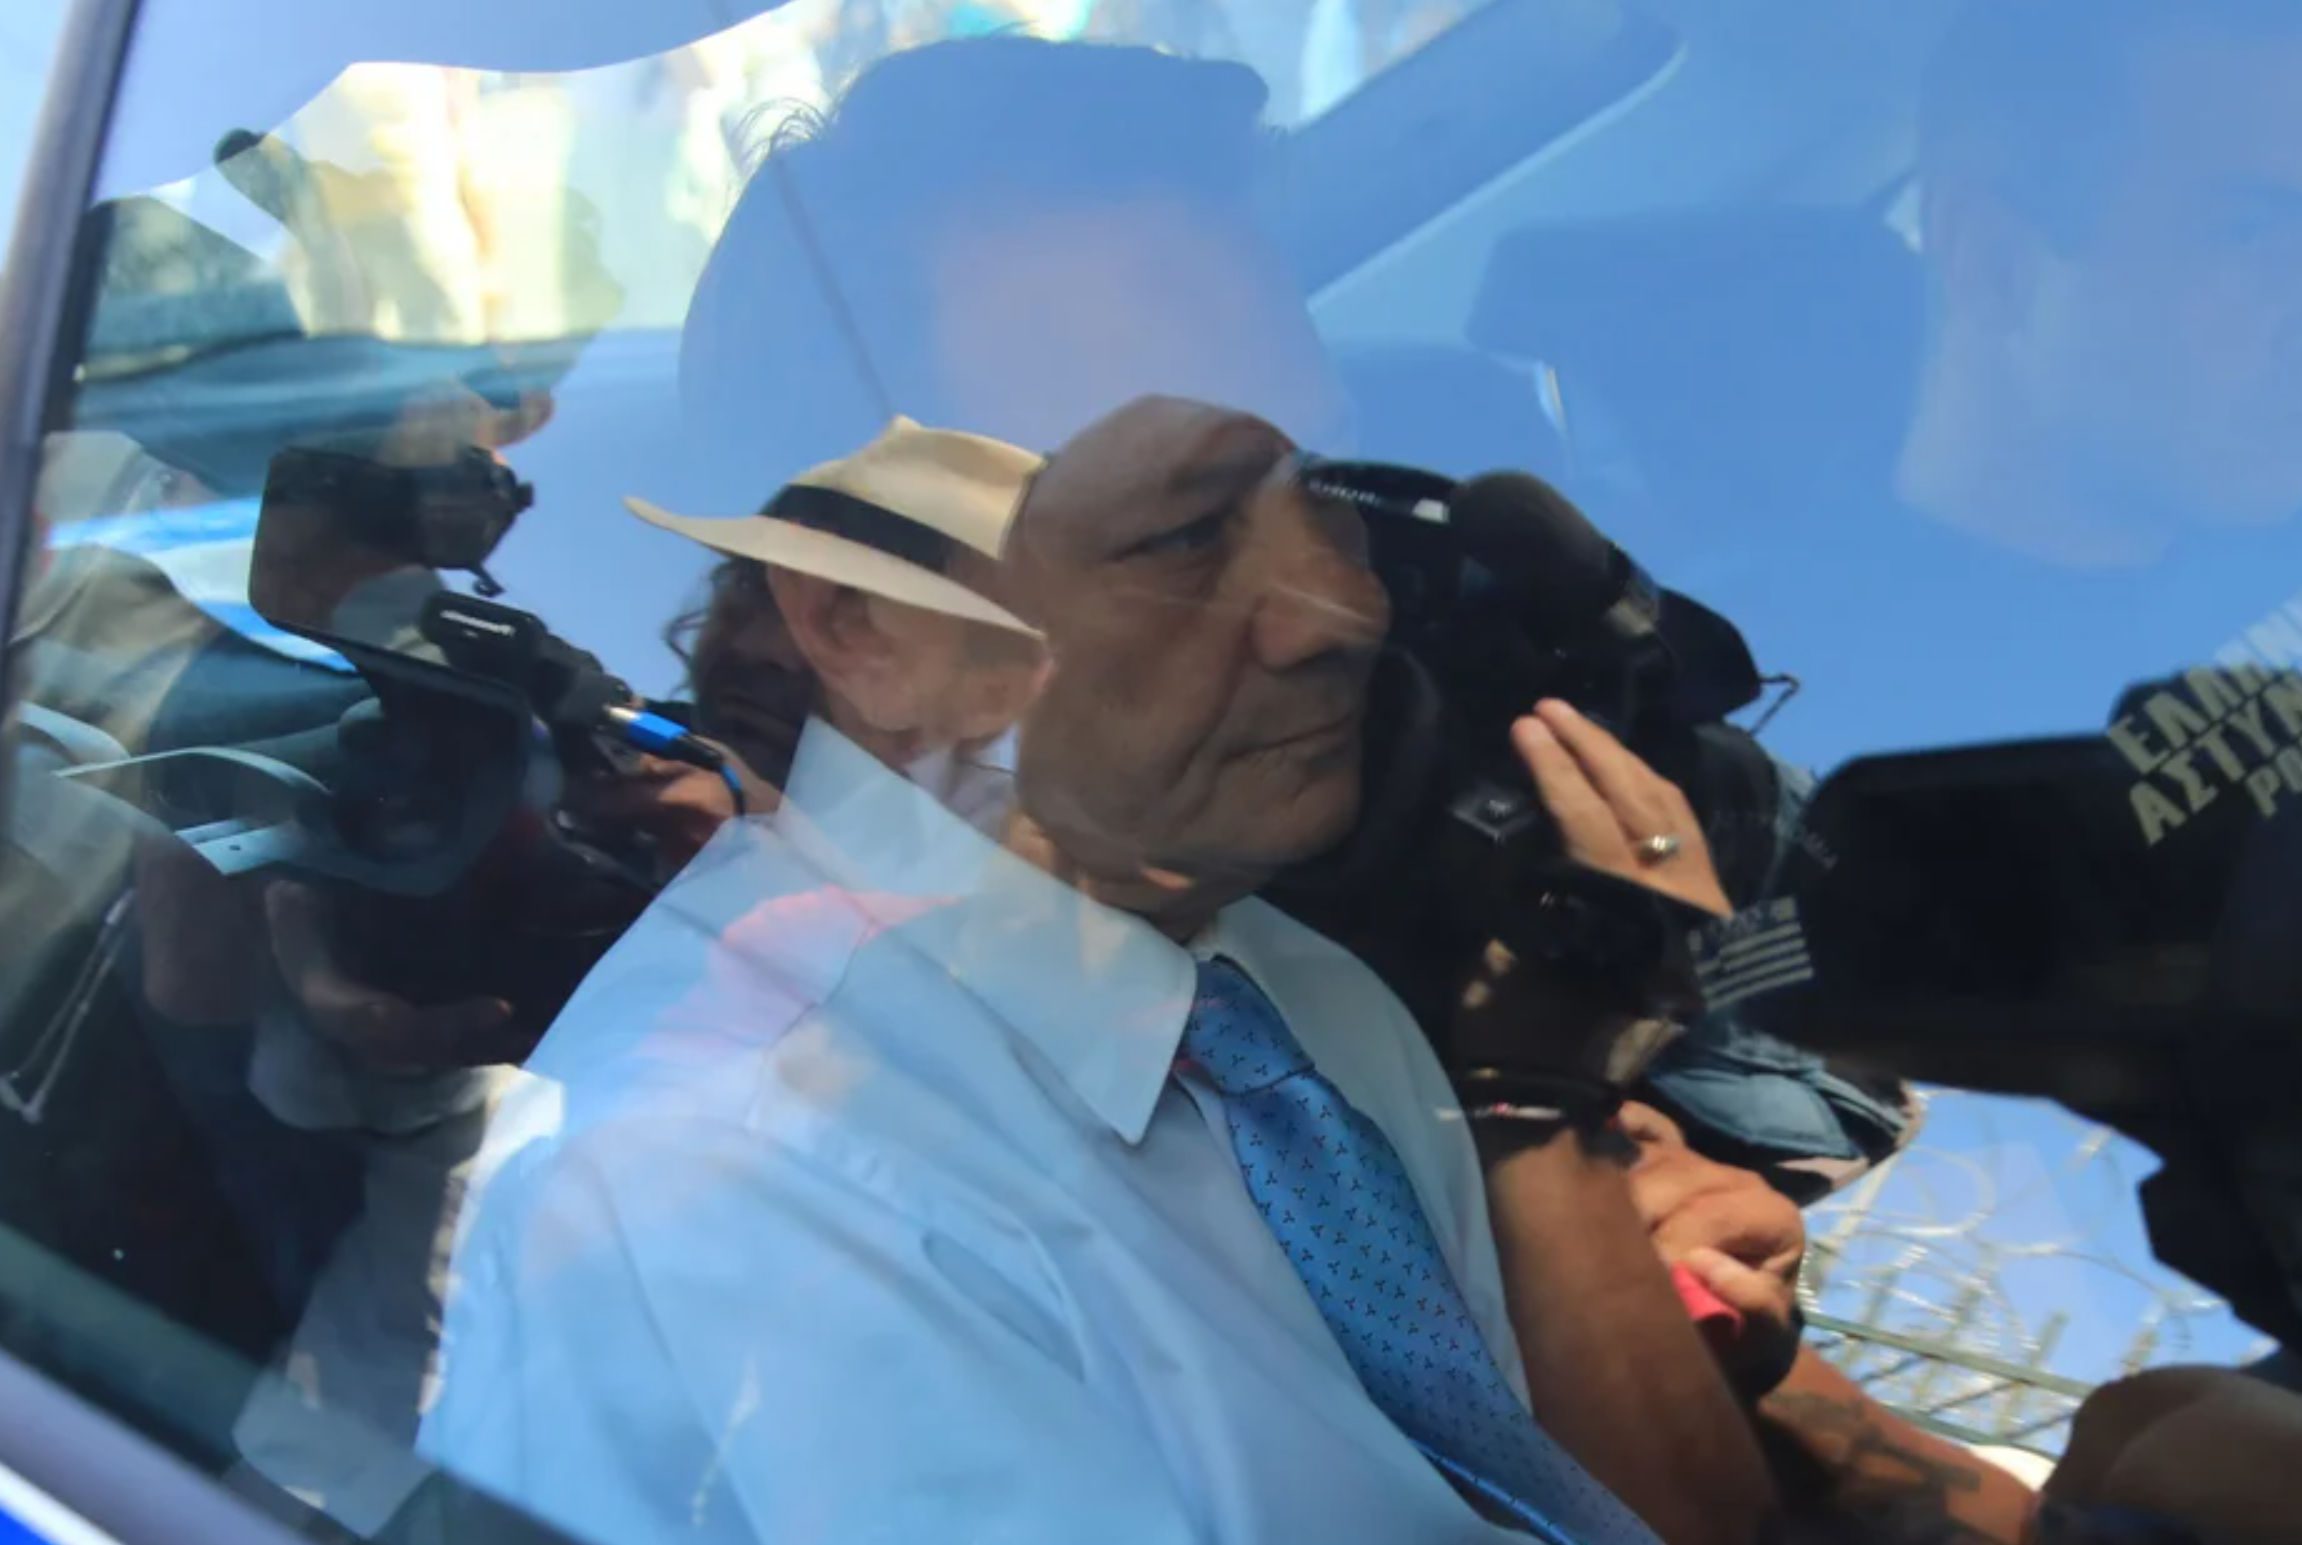 Απόστολος Λύτρας: Στη VIP πτέρυγα των φυλακών Κορυδαλλού ο ποινικολόγος – Εκεί ήταν Τσοχατζόπουλος και Αναγνωστόπουλος